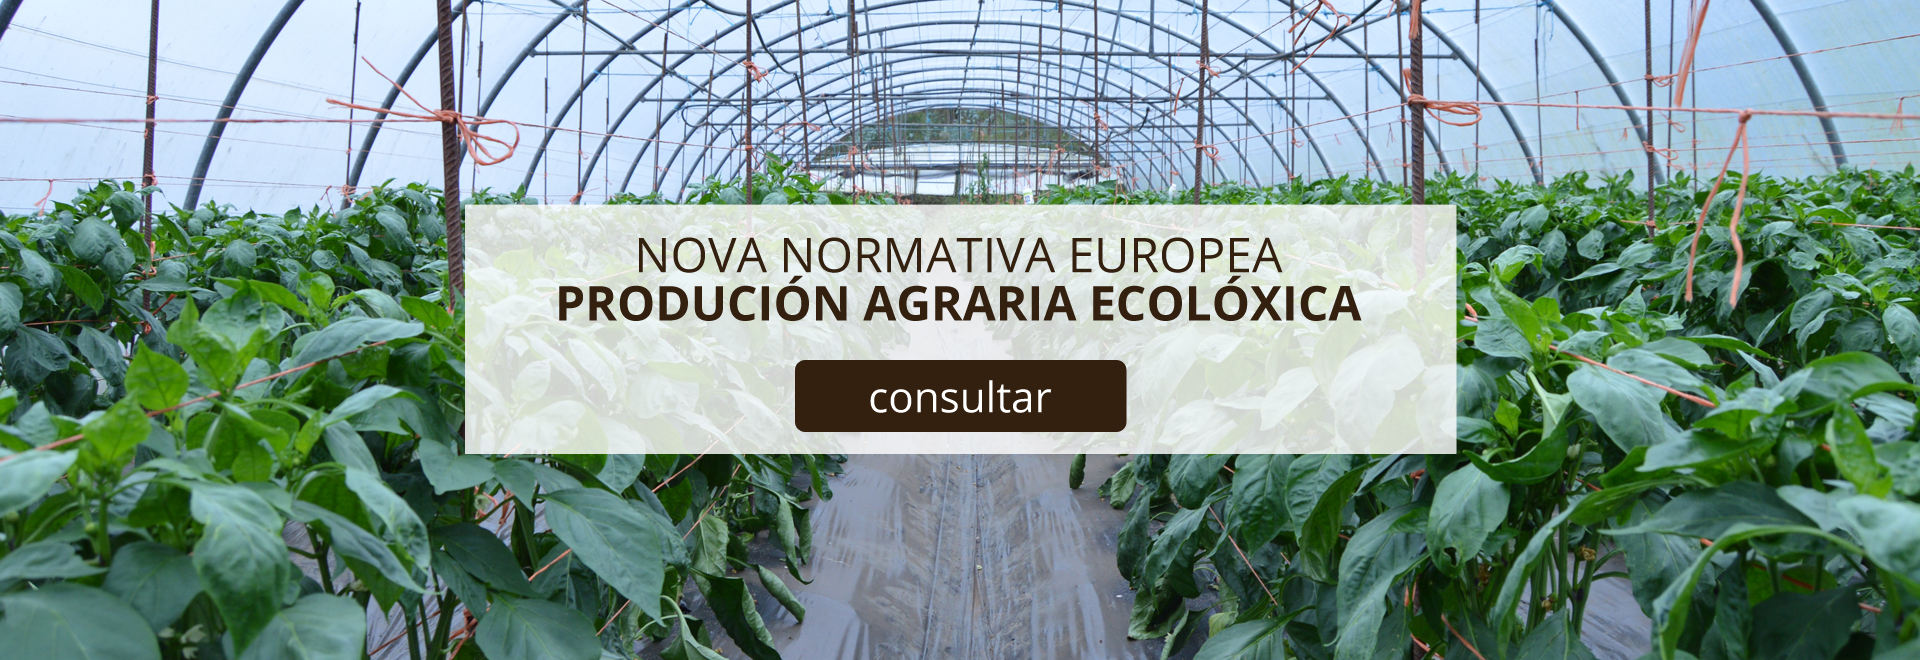 nueva-normativa-europea-cultivo-ecologico